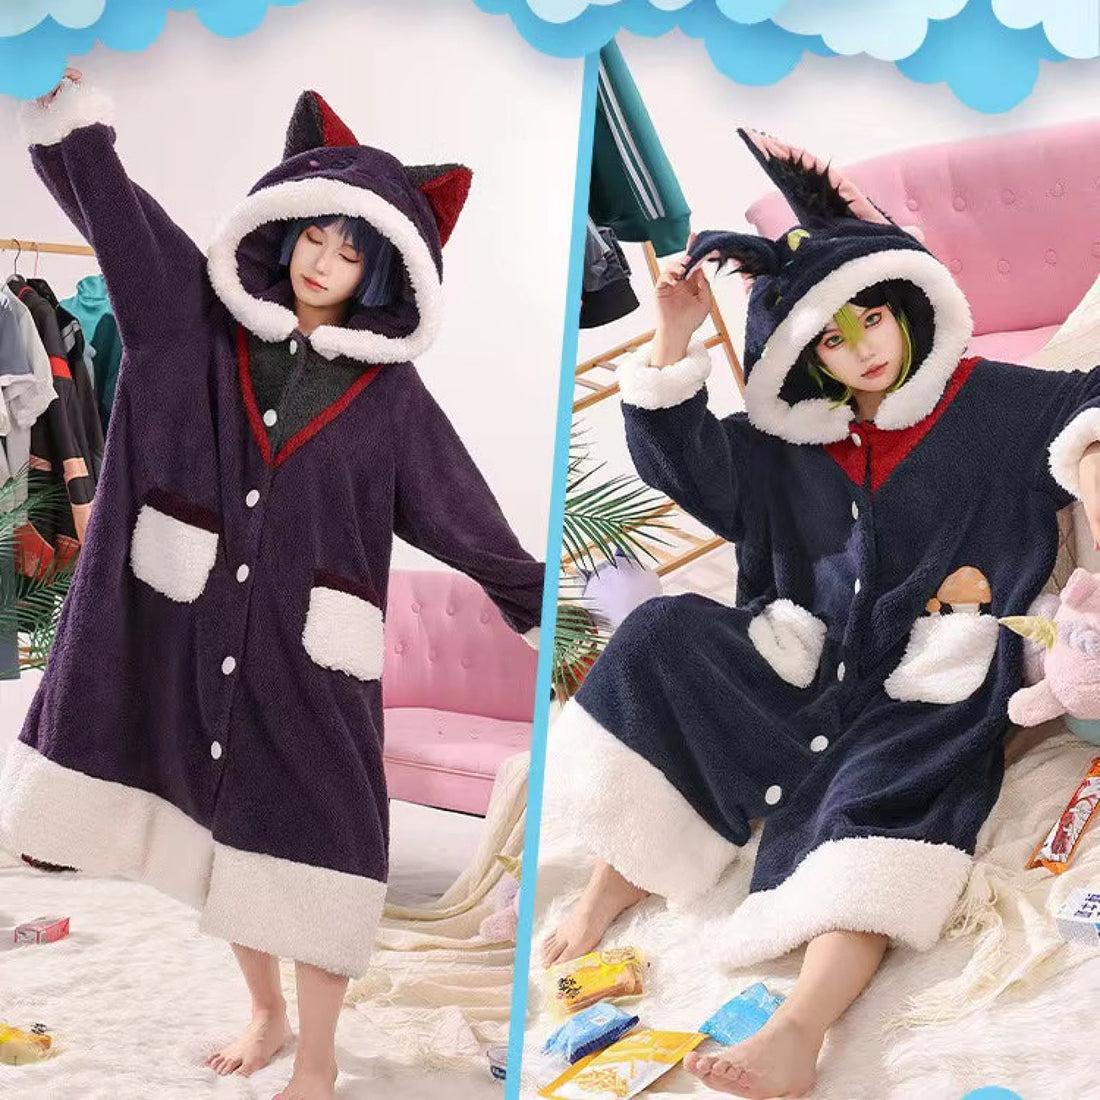 Genshin Impact Sacramouche Zhongli Xiao Klee Ganyu Theme Pajama Cosplay Home Wear